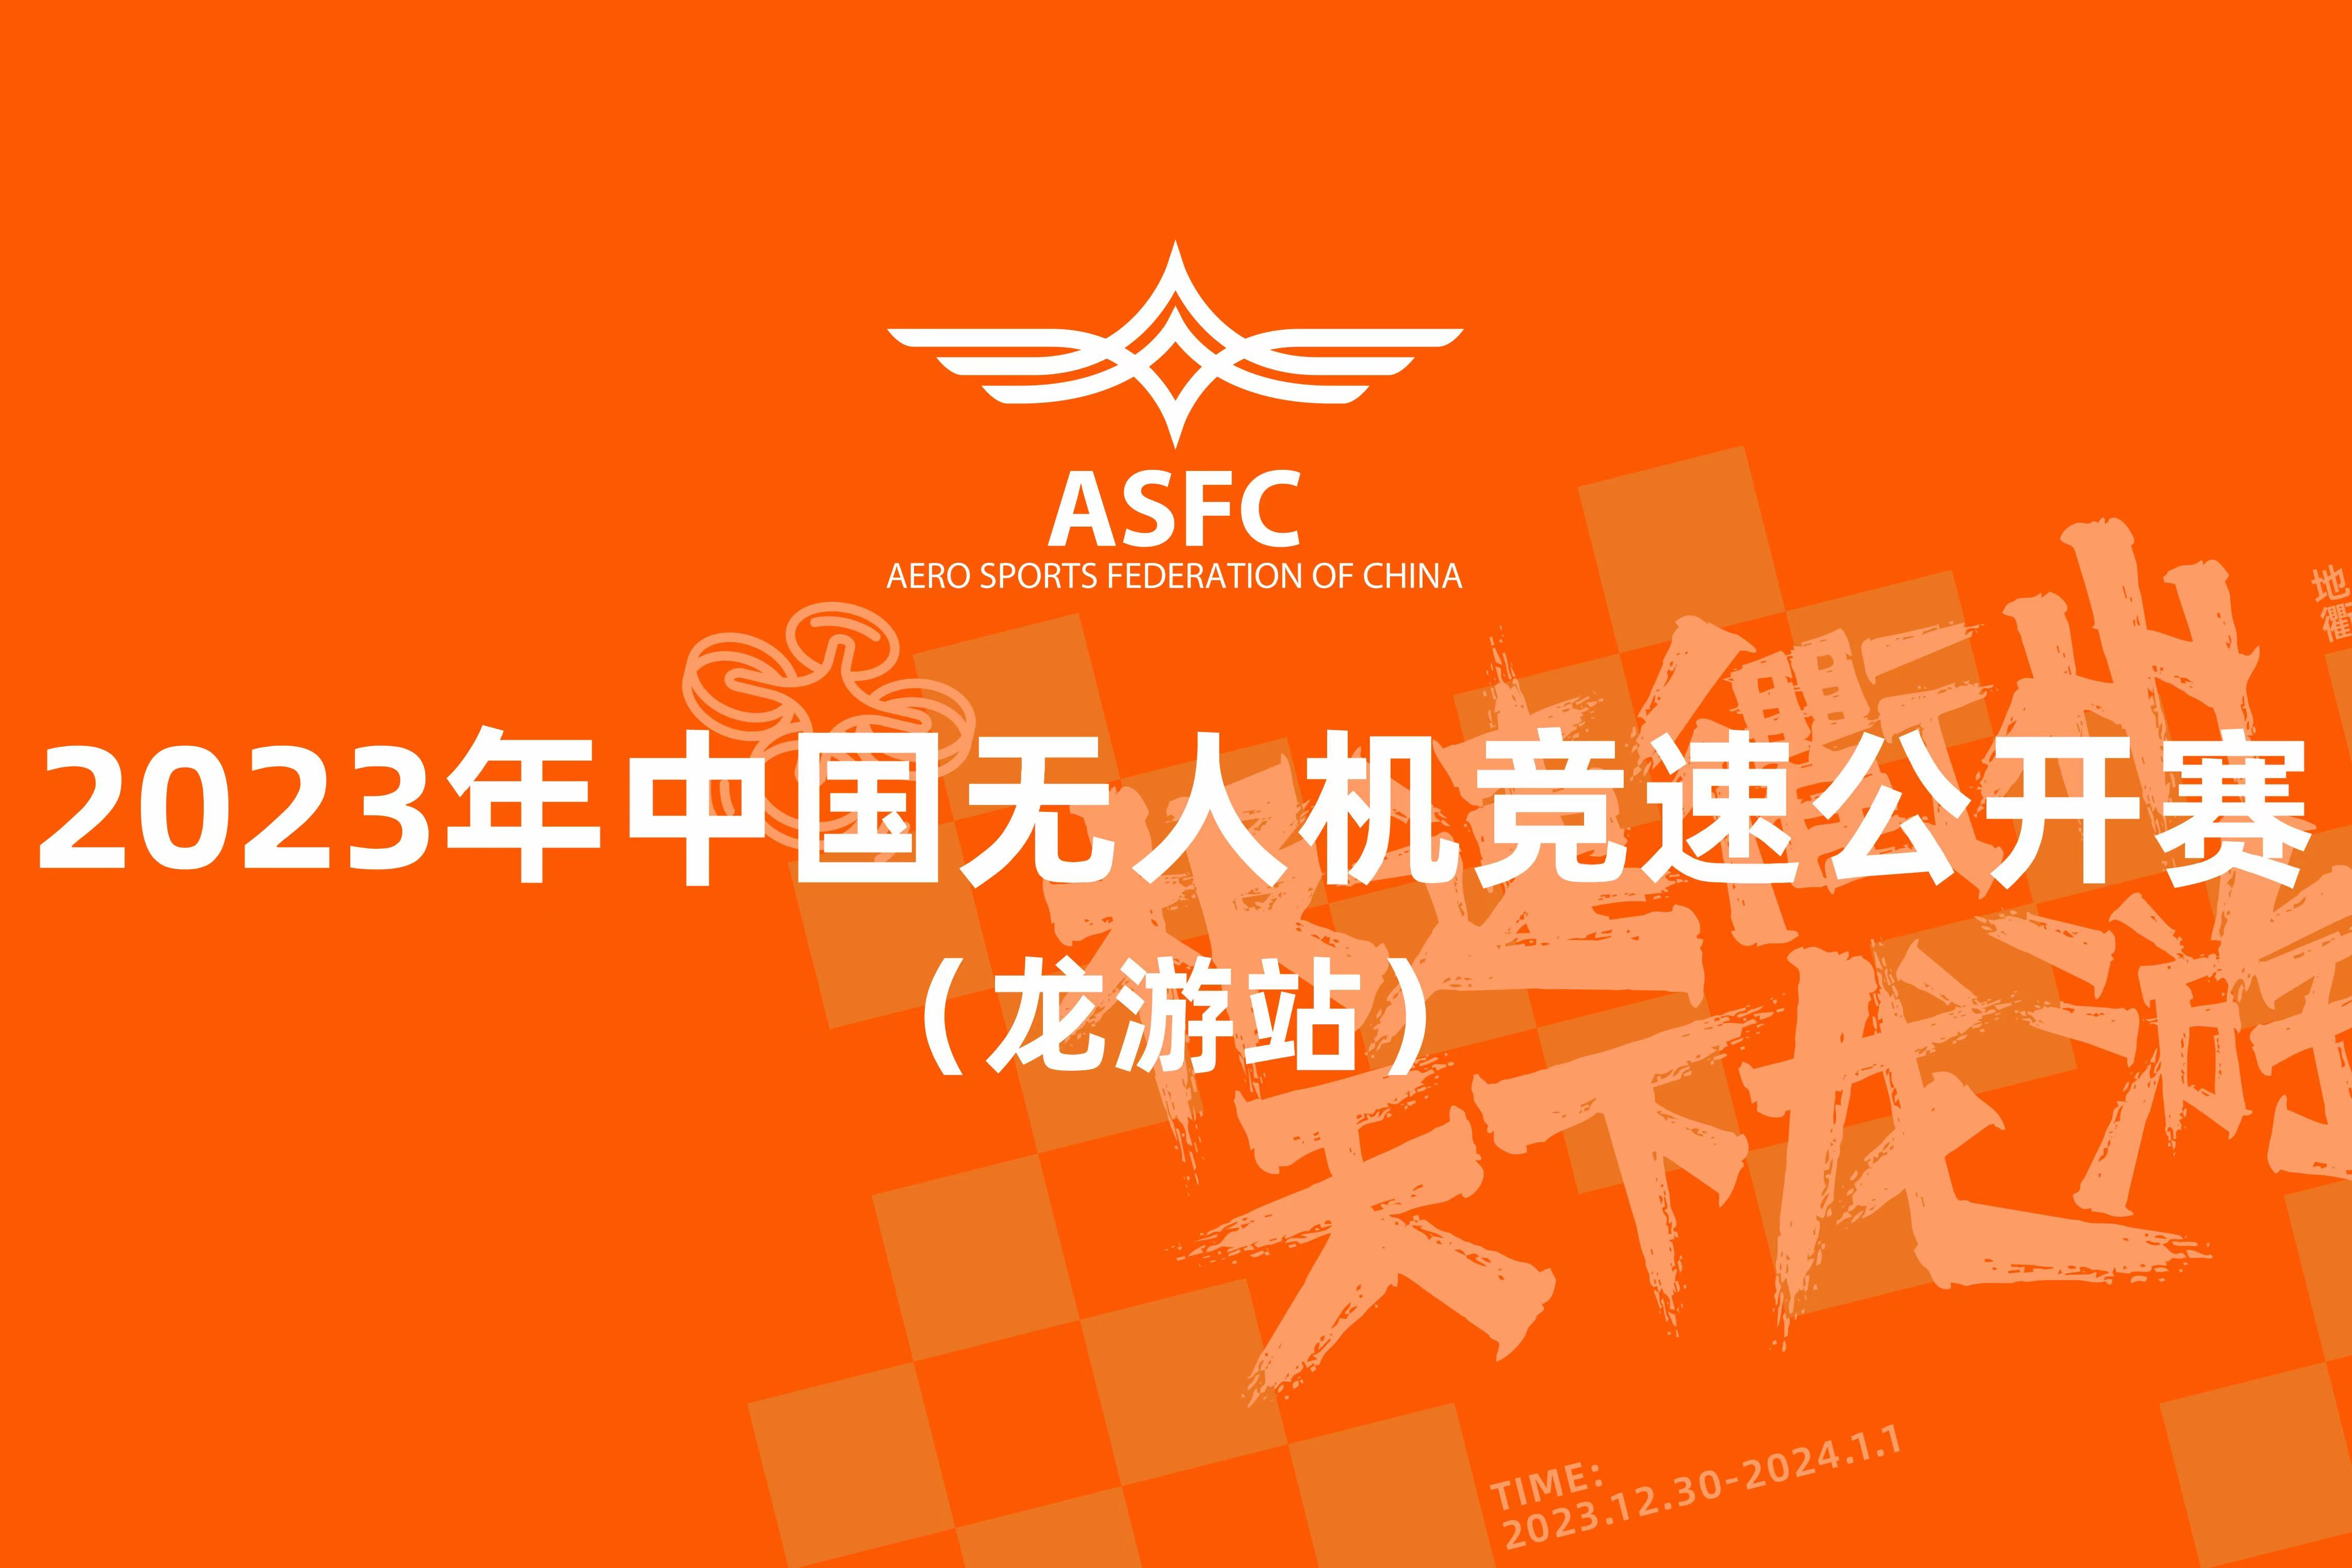 【赛事资讯】2023年中国无人机竞速公开赛（龙游站）火热招商中！ - 比翼飞行网